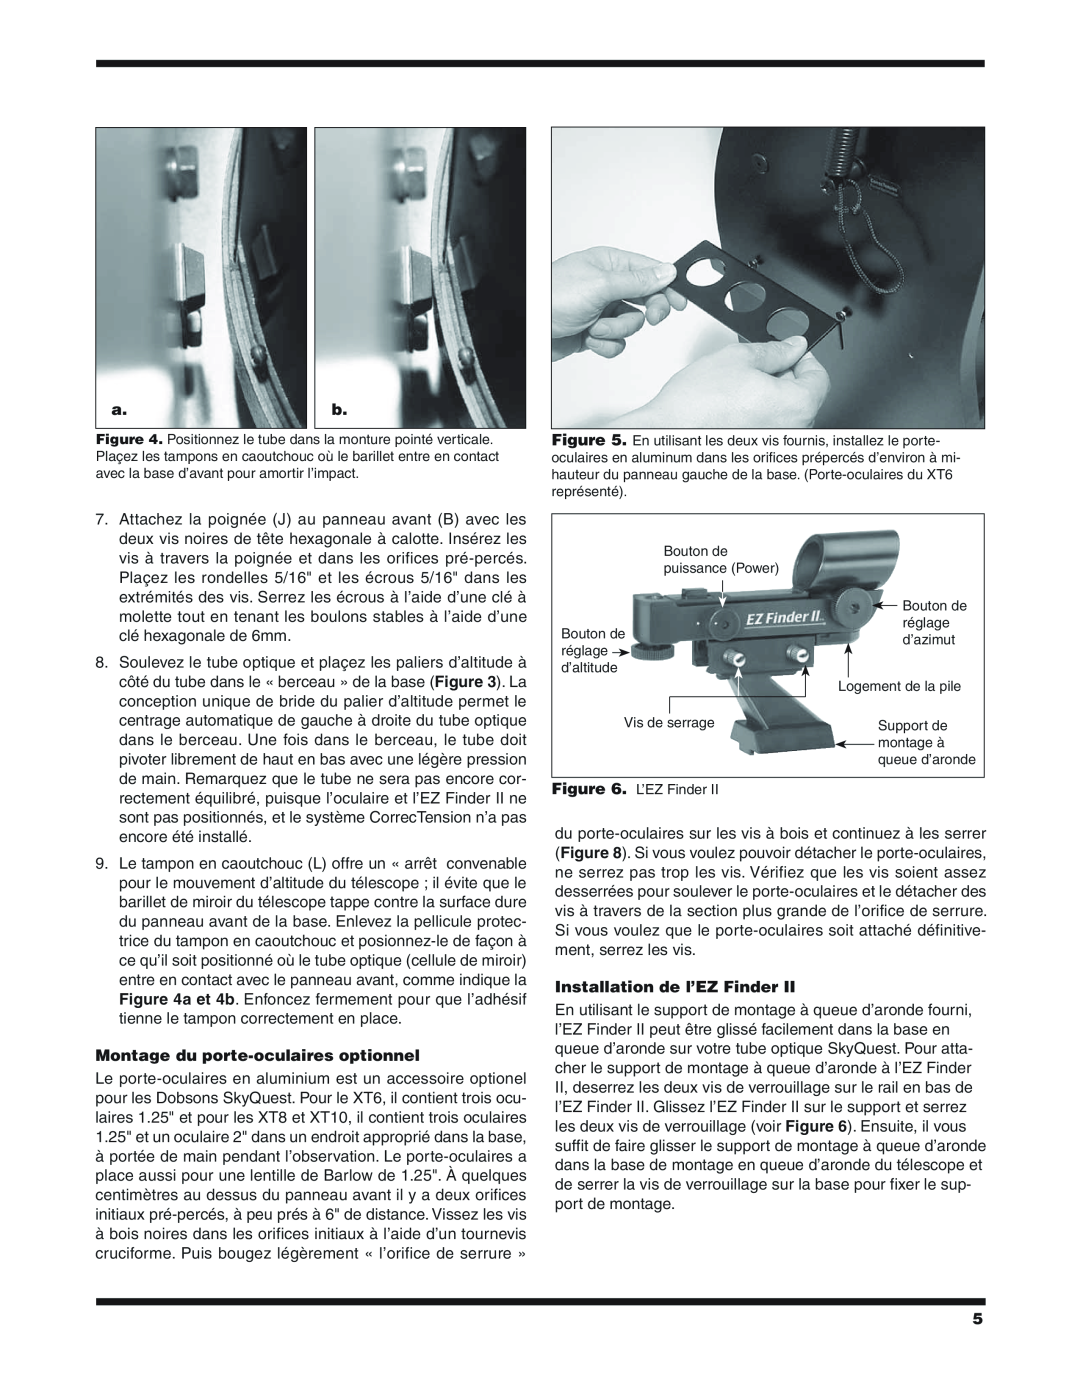 Orion XT6 CLASSIC manual Montage du porte-oculaires optionnel, Installation de l’EZ Finder 